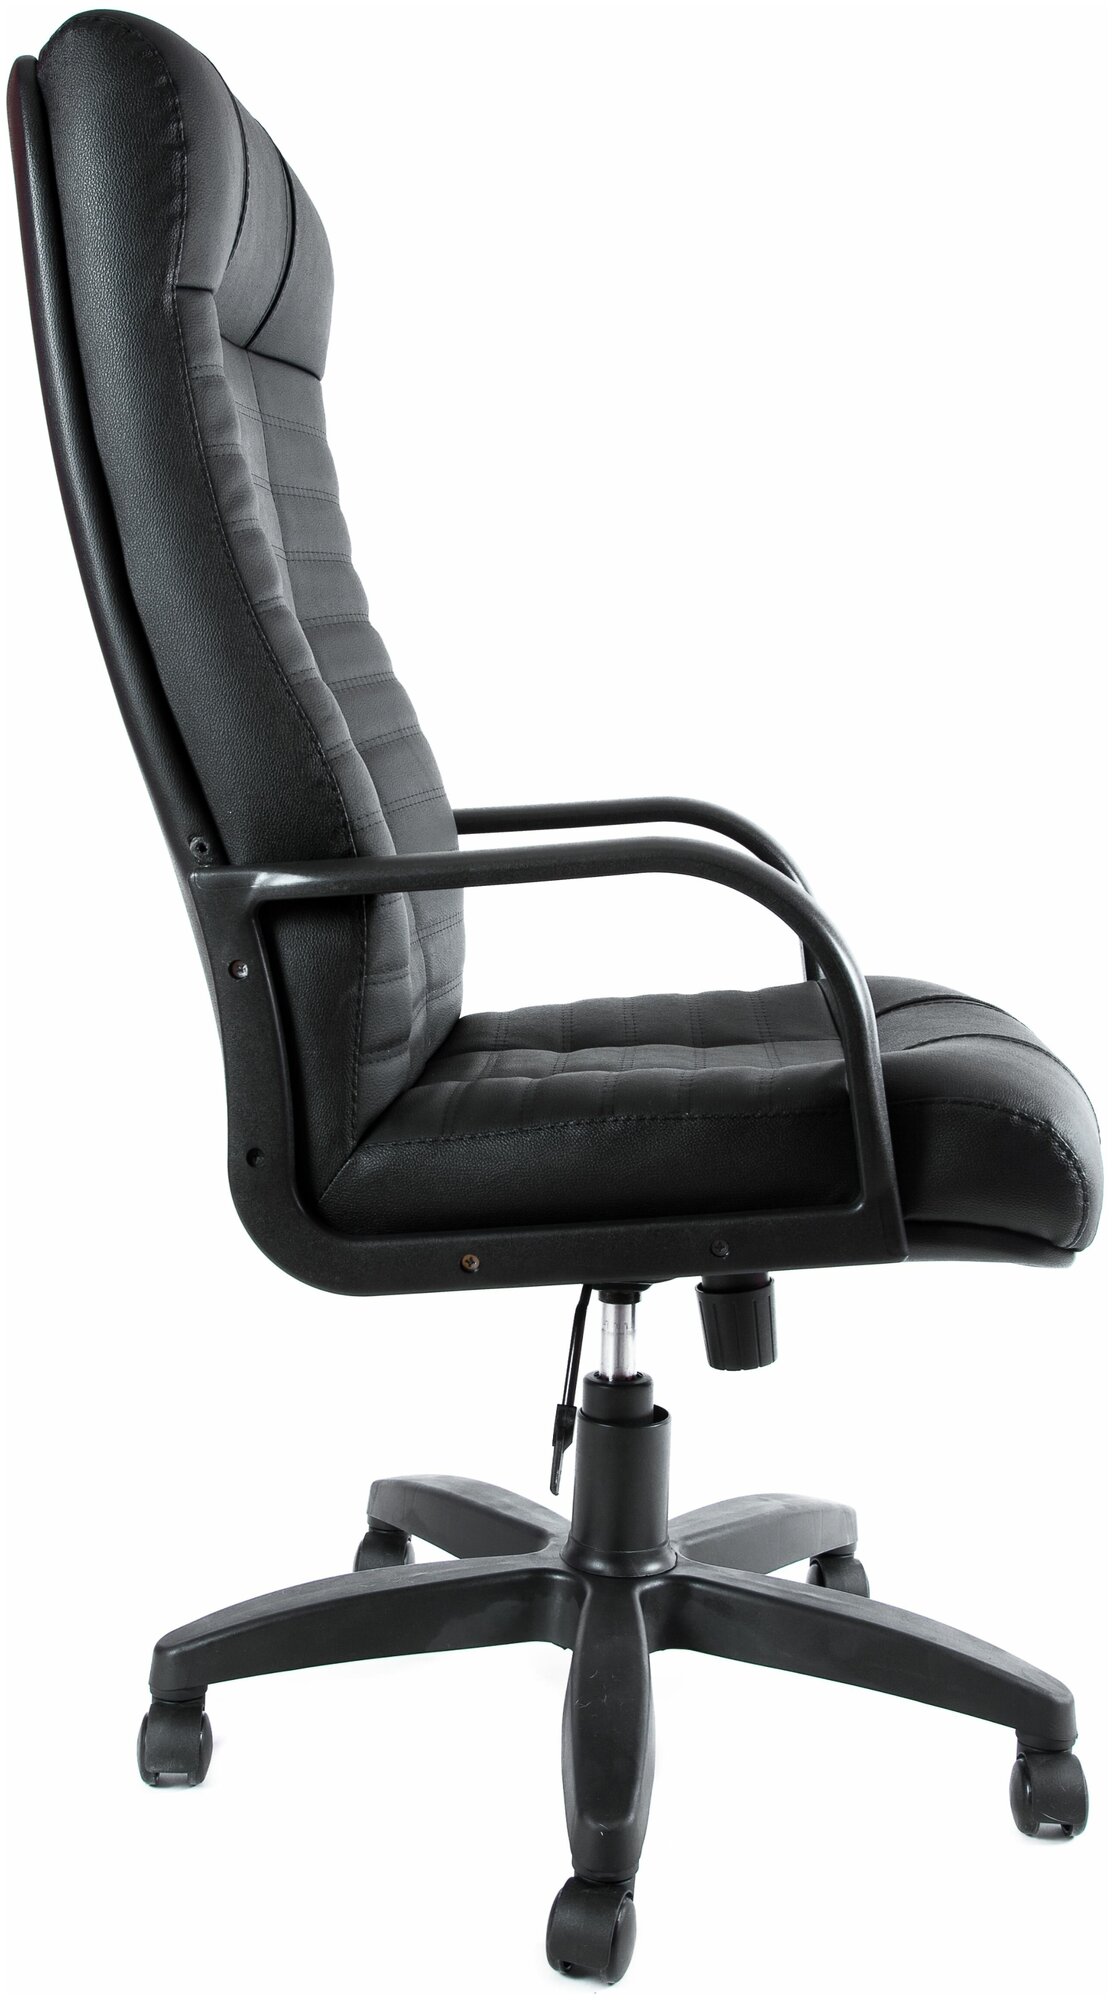 Компьютерное кресло Евростиль Атлант офисное, обивка: натуральная кожа, цвет: черный